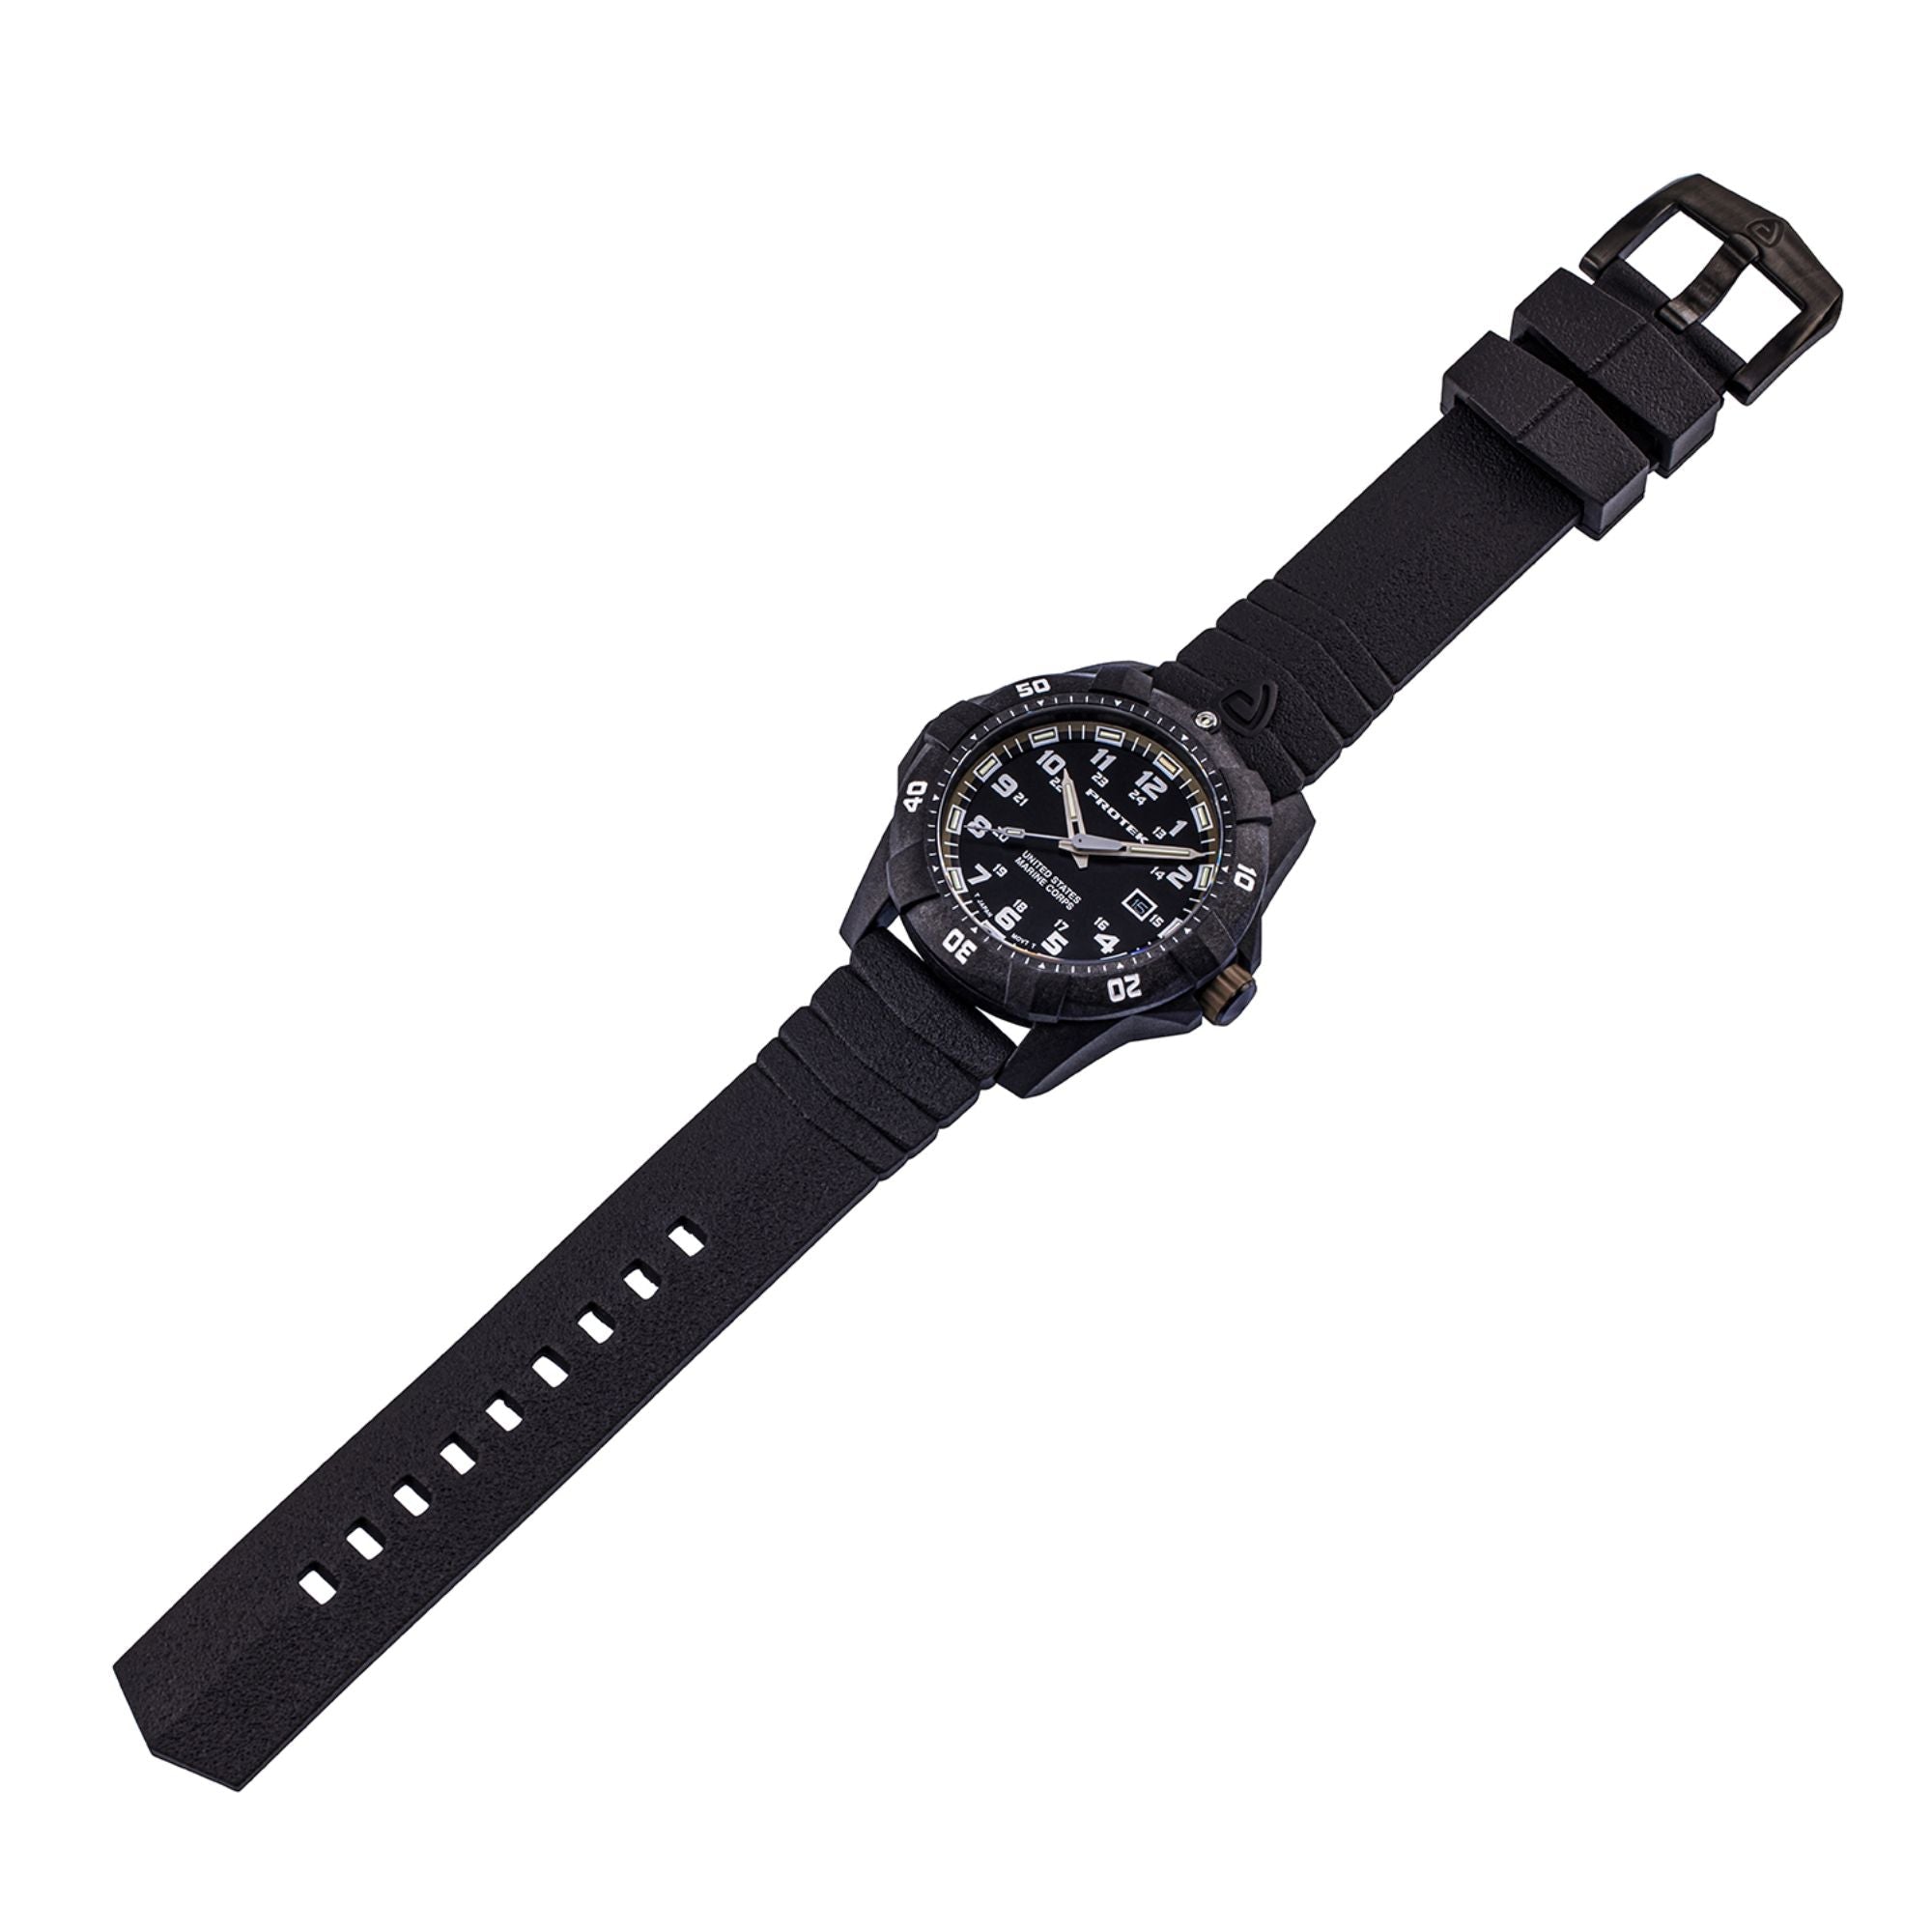 ProTek USMC Carbon Composite Dive Watch - Carbon/Black/Sand (Black Band)